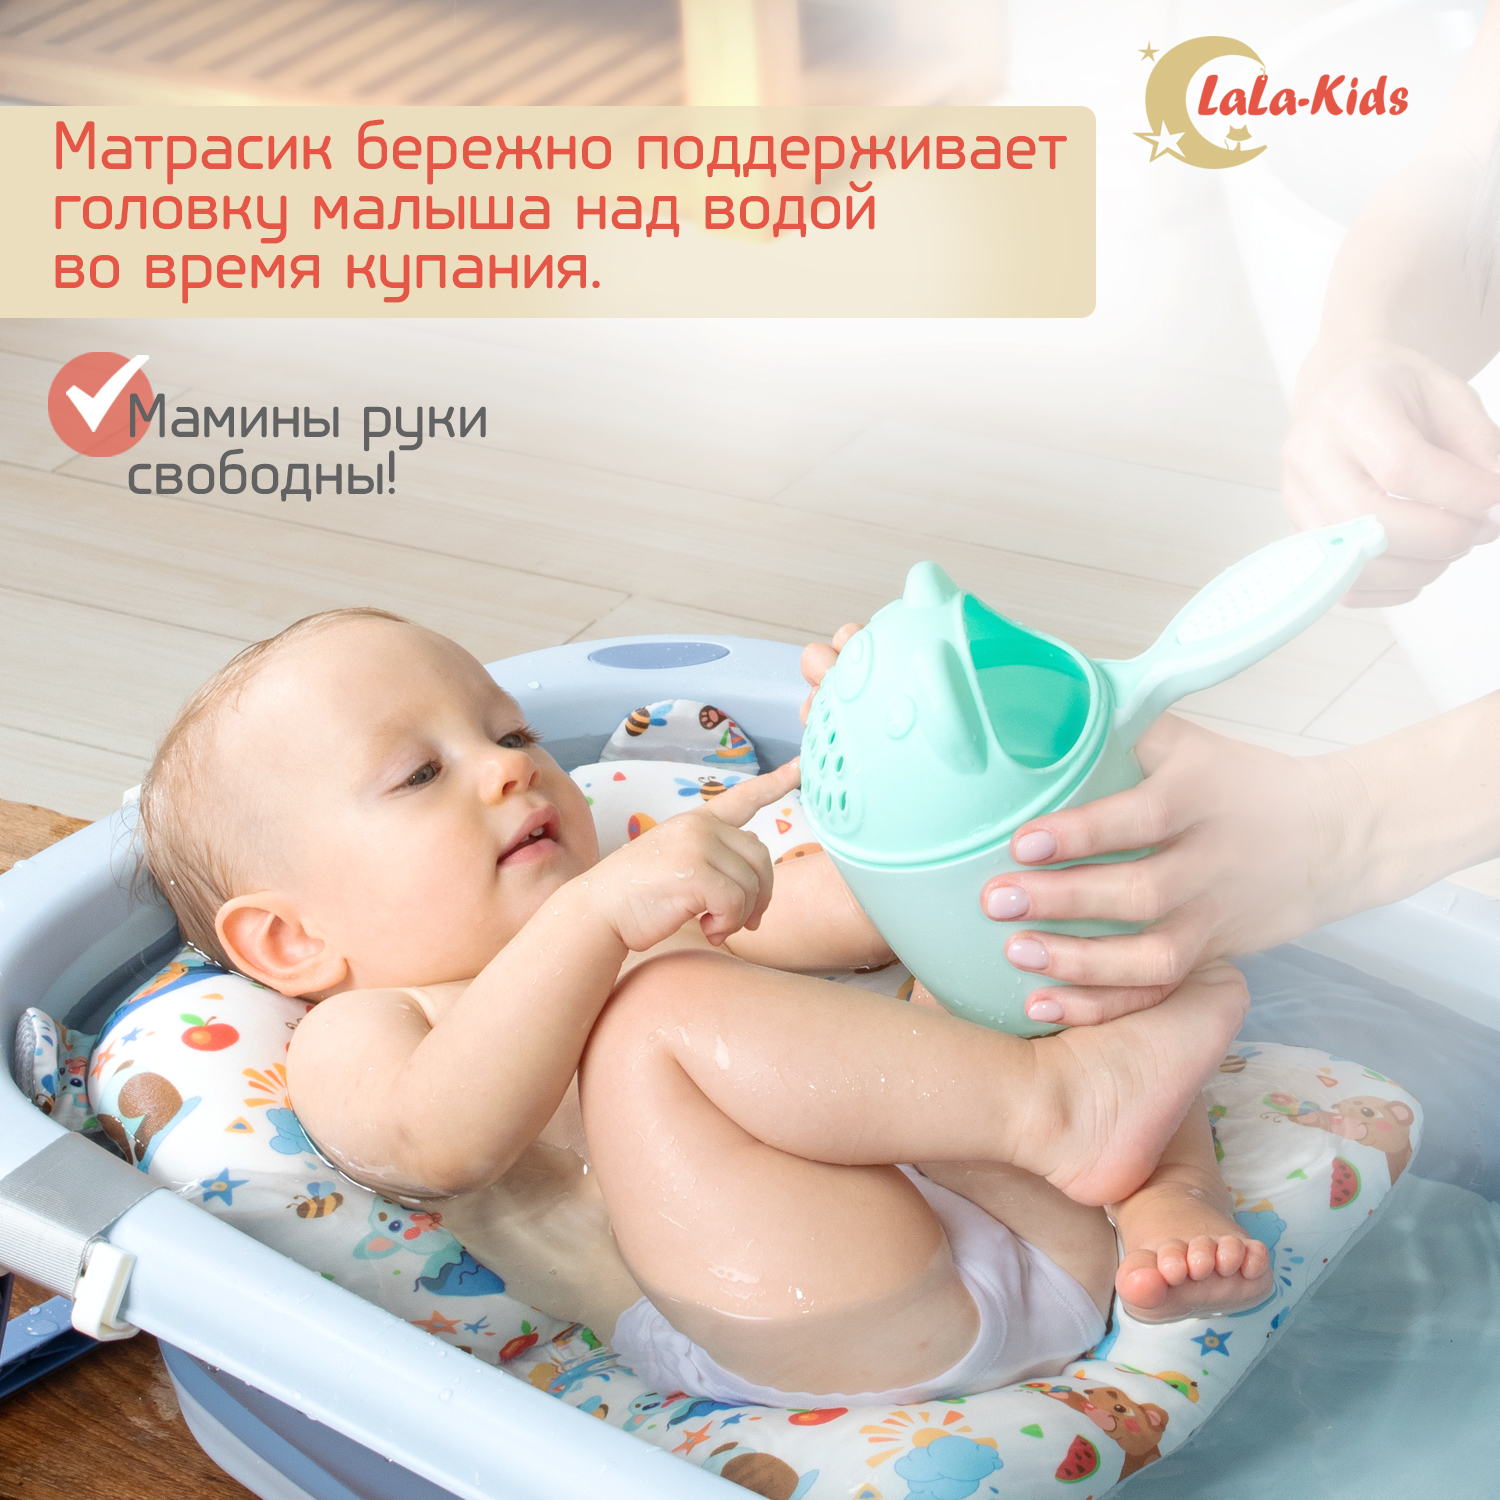 Детская ванночка LaLa-Kids складная с матрасиком для купания новорожденных - фото 13